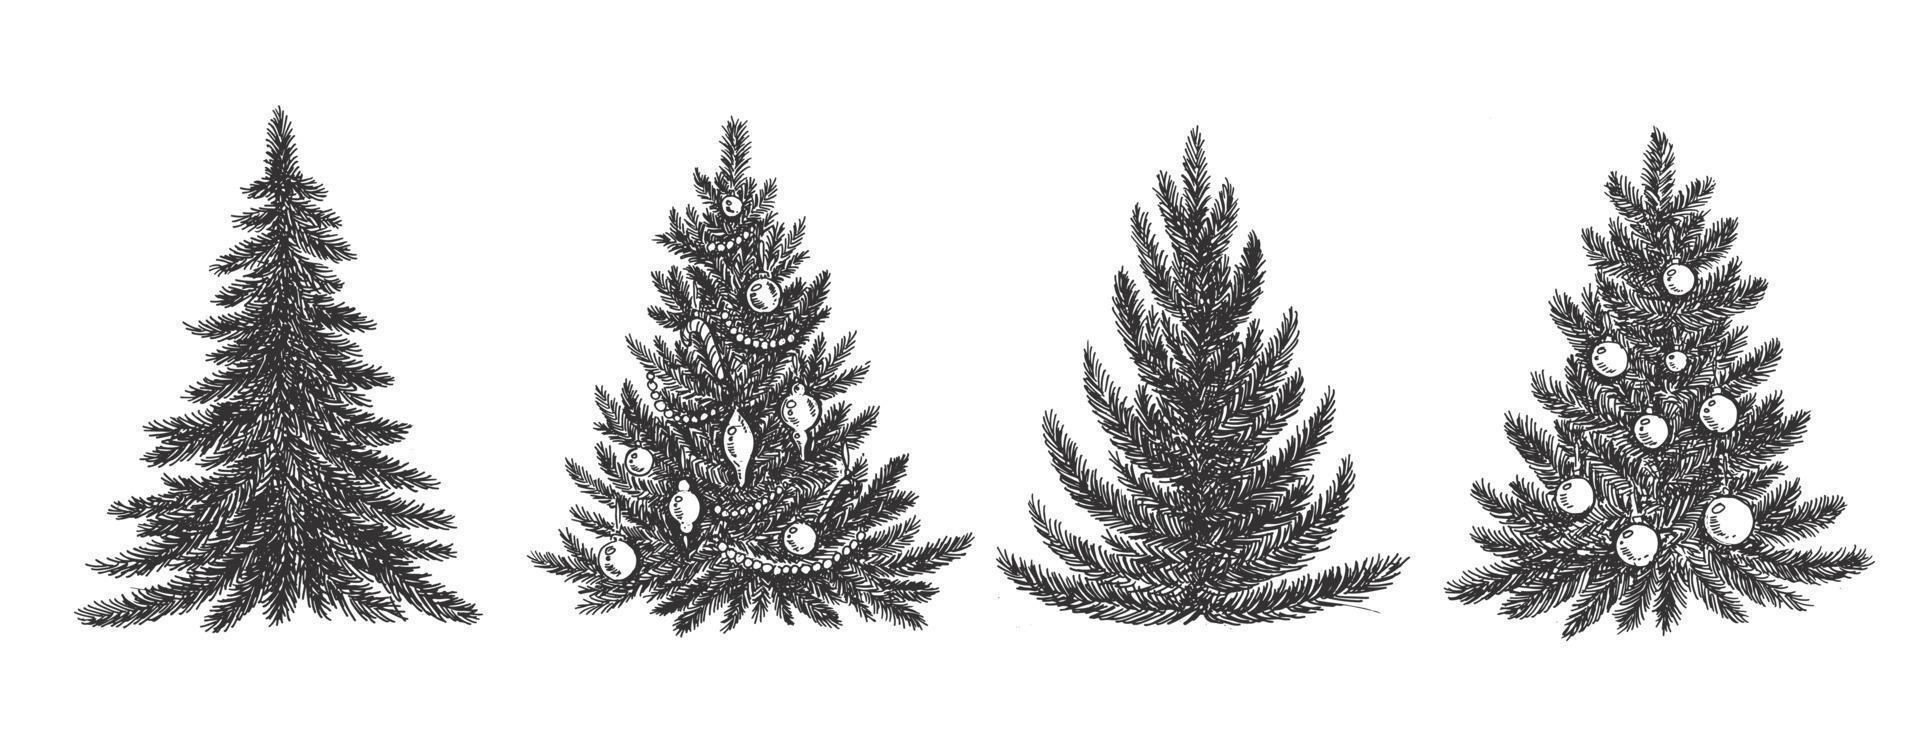 arbre de noël, style dessiné à la main, illustration vectorielle vecteur